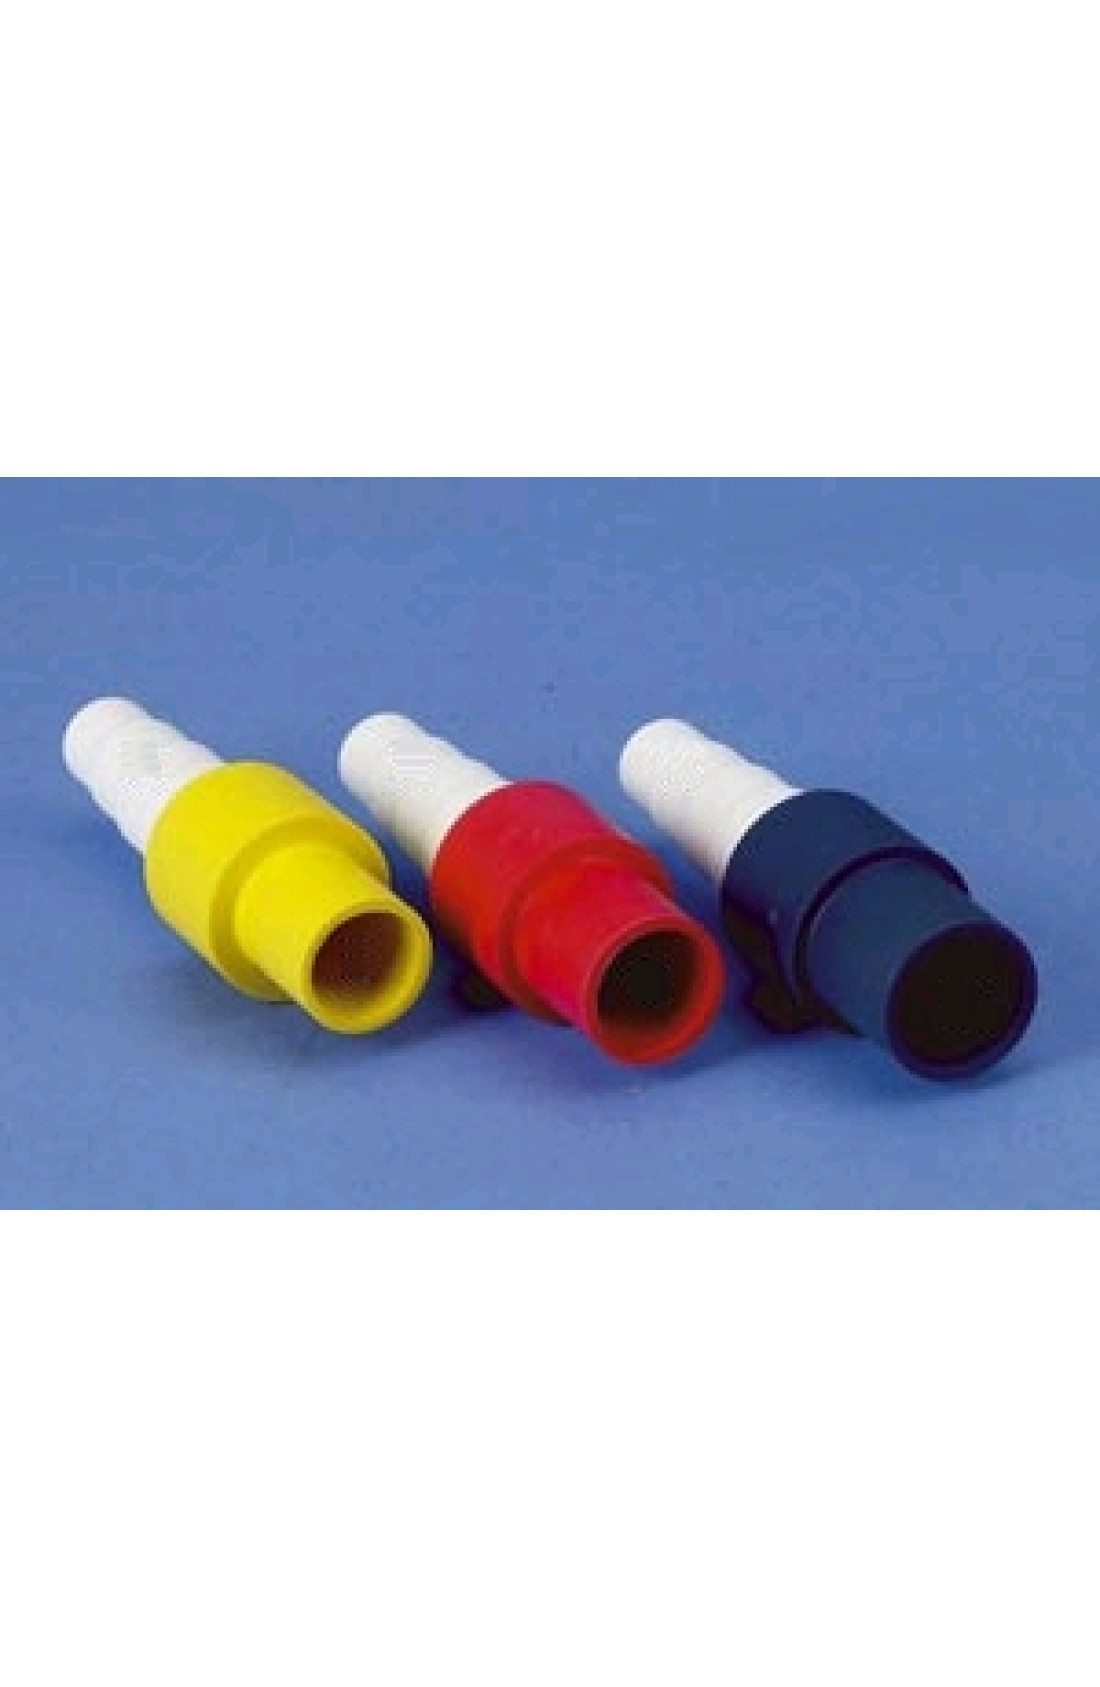 CCSR18 - Raccordo per tubo scarico condensa diam. 18mm